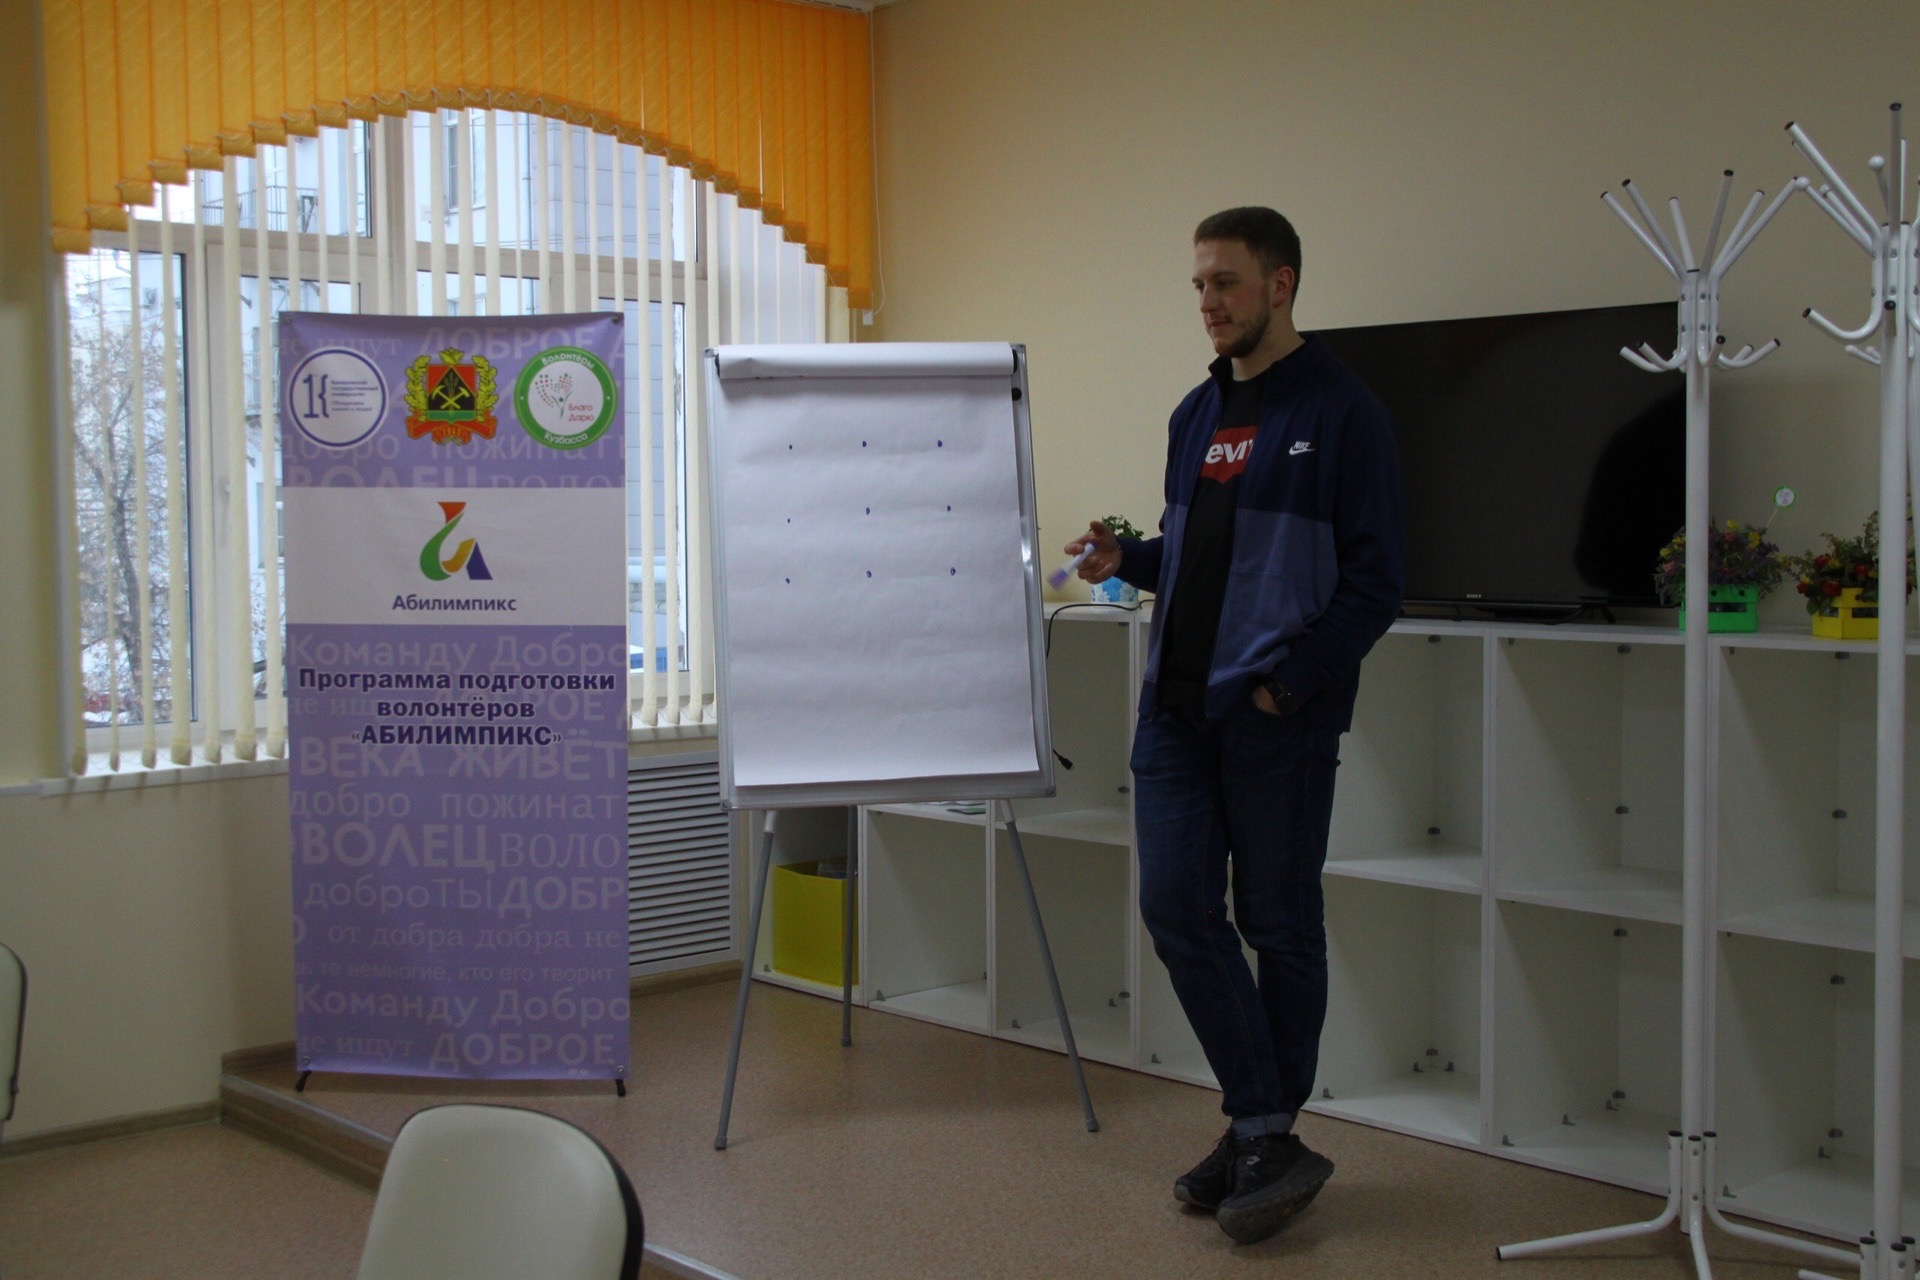 Волонтеры овз. Волонтеры с ОВЗ. Учу в Кузбассе. Особенности работы волонтеров с людьми с инвалидностью Абилимпикс.